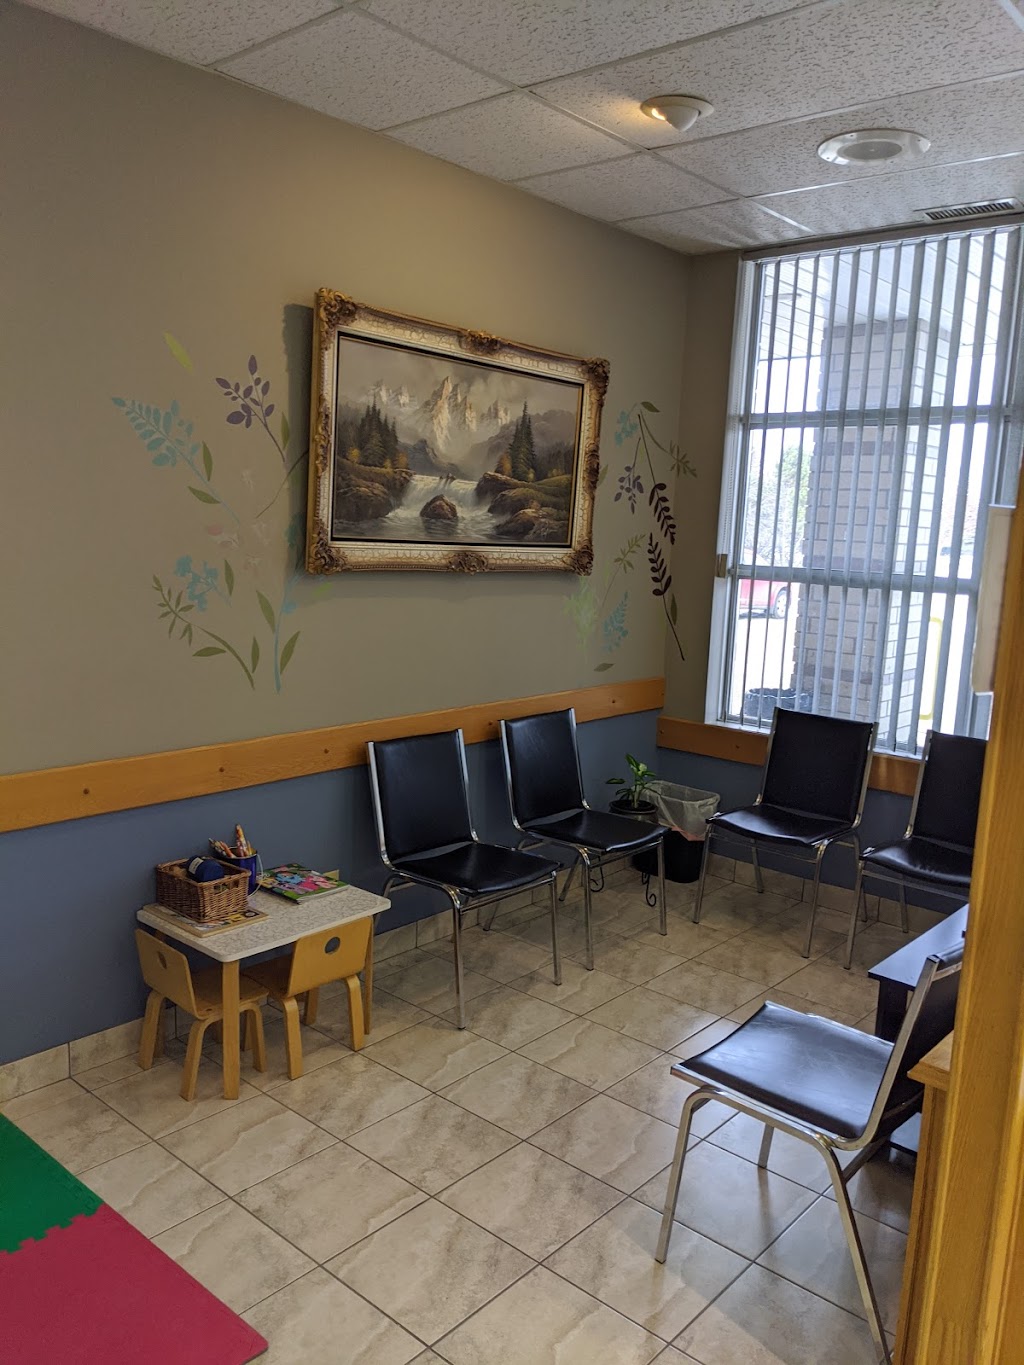 Deer Park Dental Centre | dentist | 255 Davison Dr #6, Red Deer, AB T4R 2H2, Canada | 4033413530 OR +1 403-341-3530